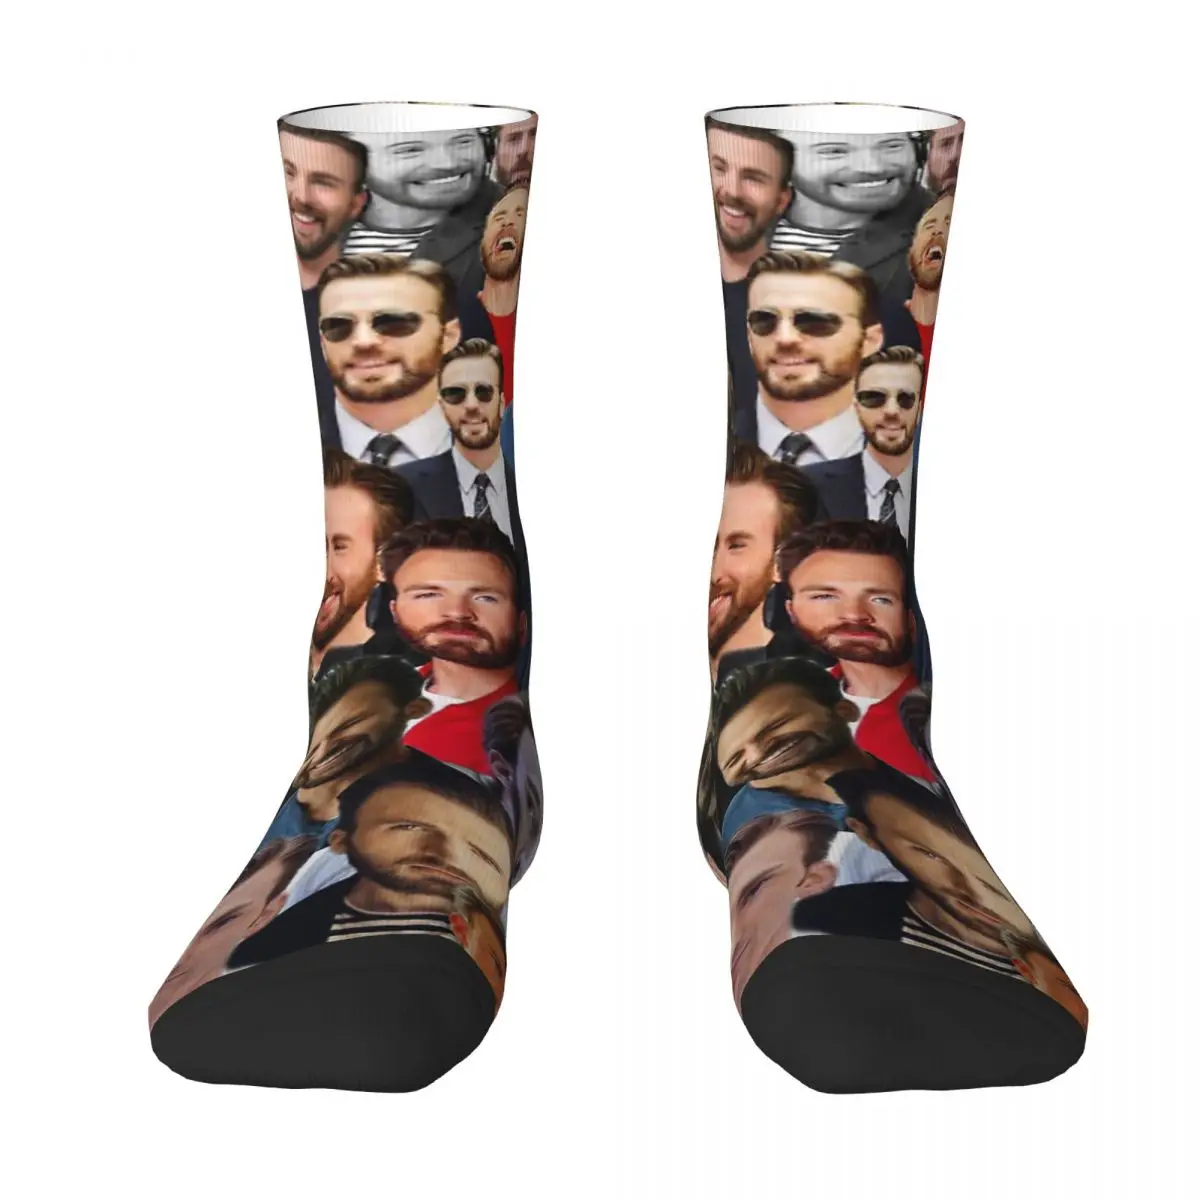 Chris Evans Adult Socks Unisex socks,men Socks women Socks chris connor 1 cd